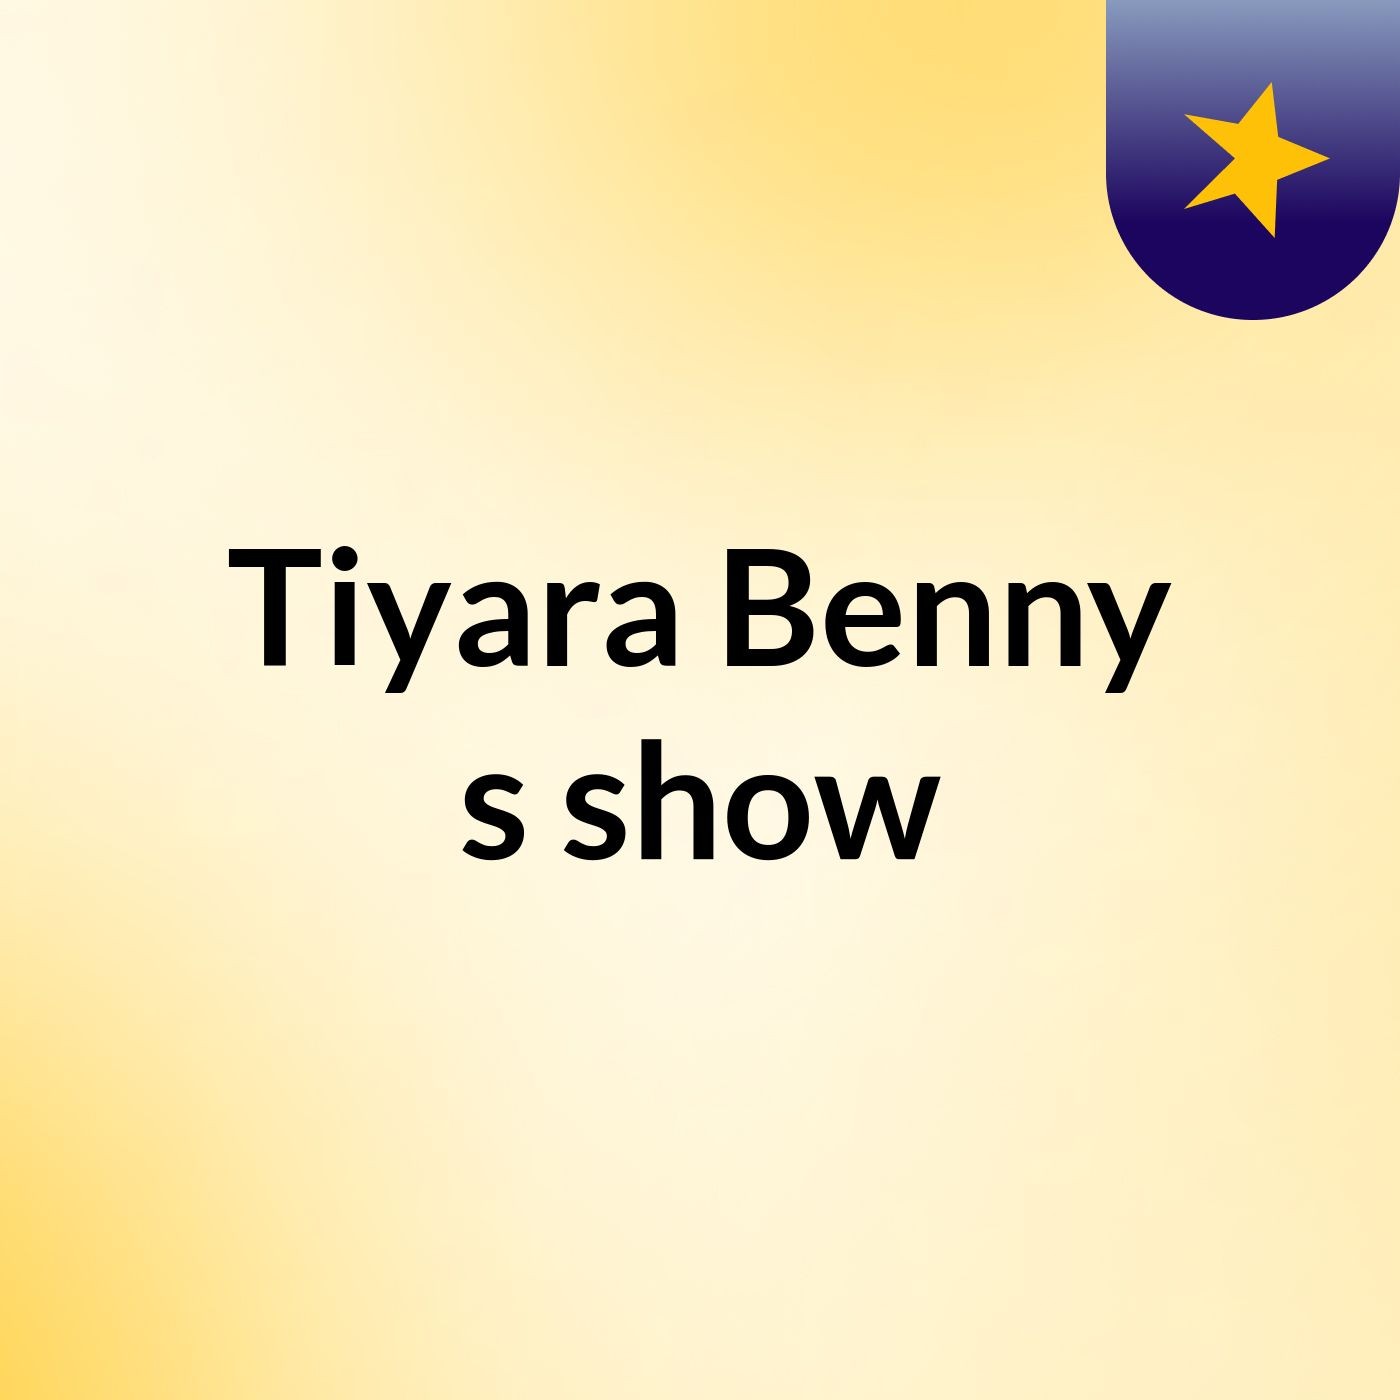 Tiyara Benny's show